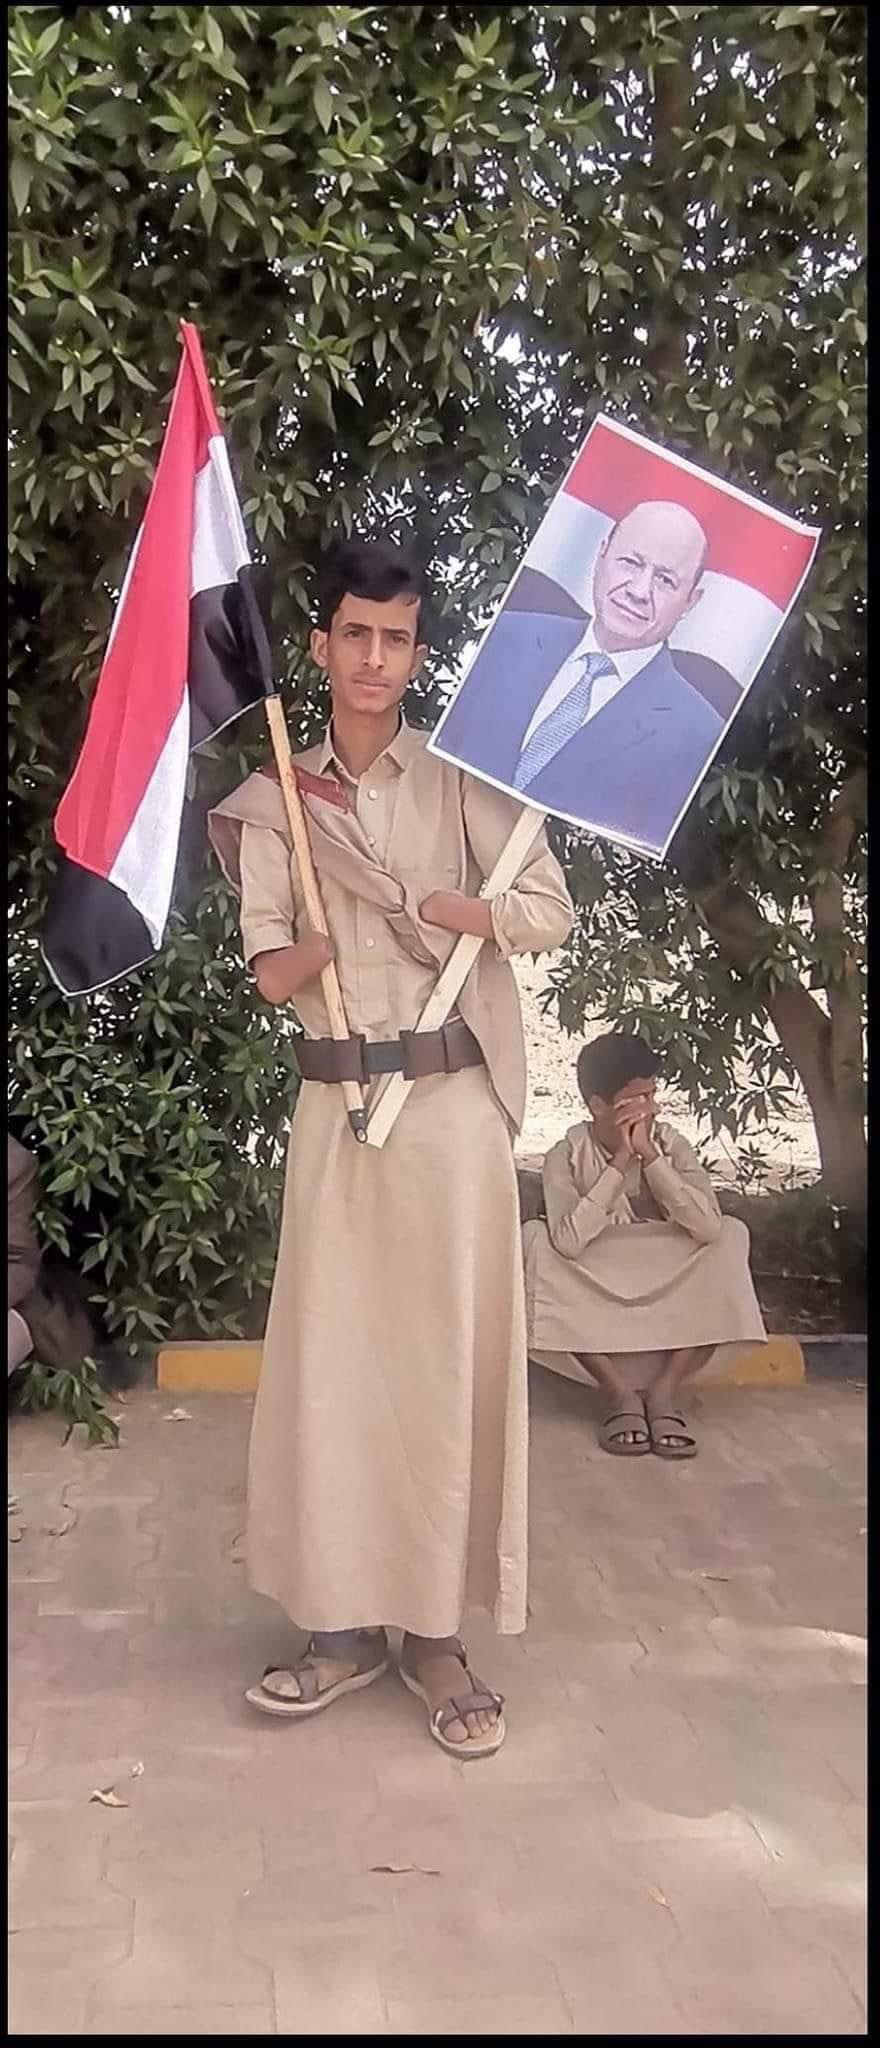 شاهد الصورة الأكثر تداولا في منصات التواصل الاجتماعي لبطل يمني ماربي أثناء زيارة الرئيس العليمي لمحافظة مأرب (صورة)